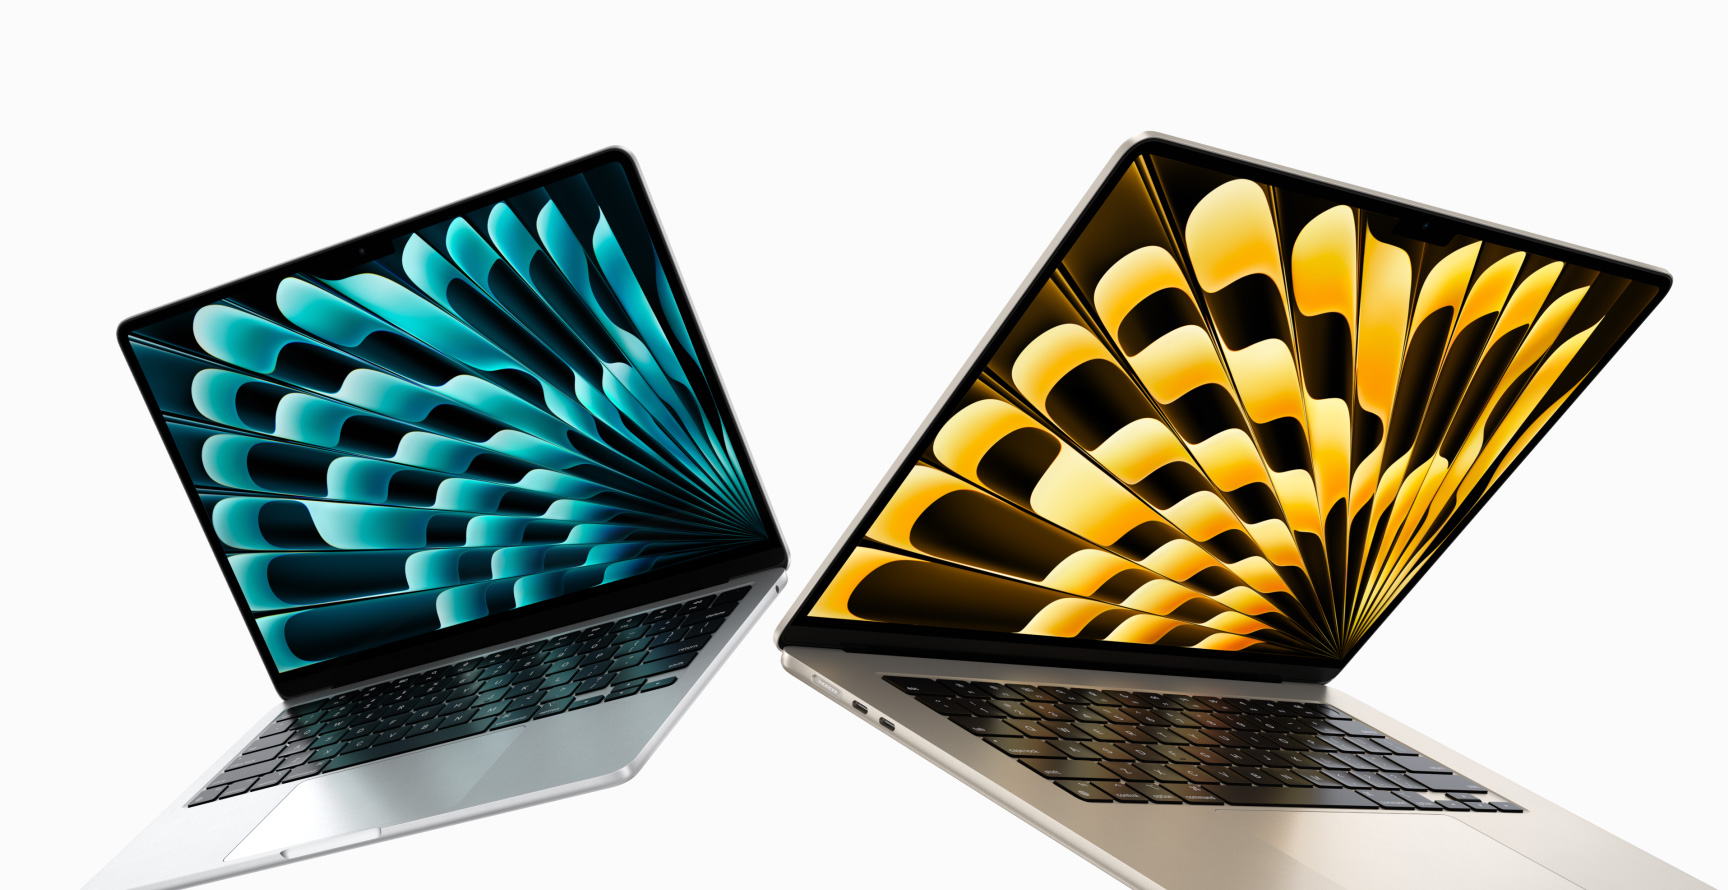 Pohled zepředu na pootevřený 13palcový a 15palcový MacBook Air, jeden stříbrný a druhý hvězdně bílý, pro ilustraci rozdílné velikosti displejů.